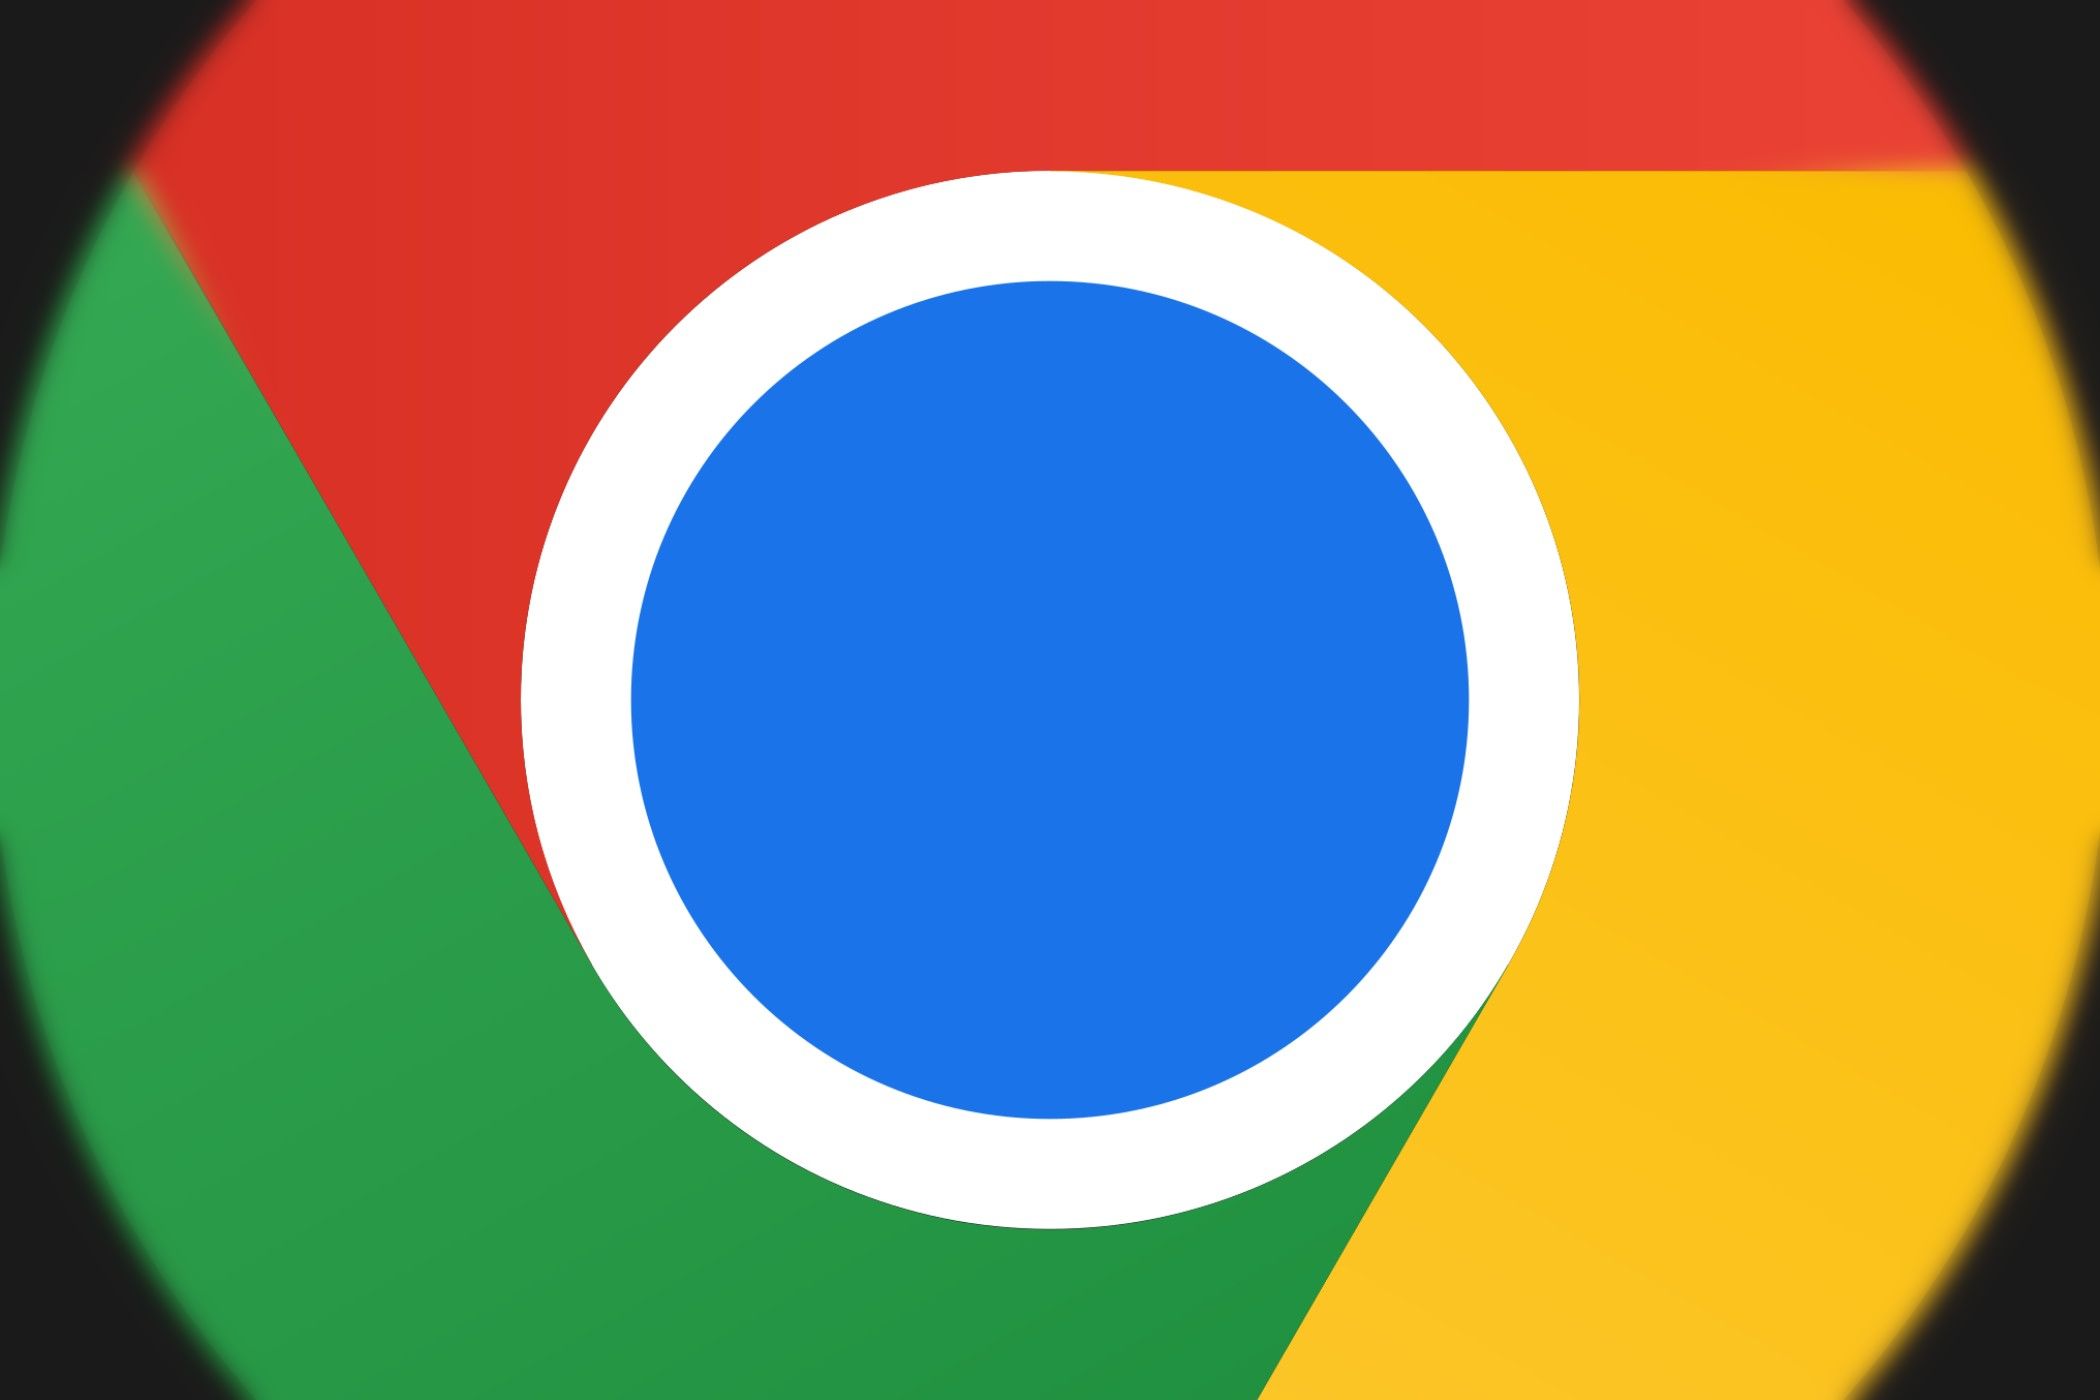 Big Chrome logo.